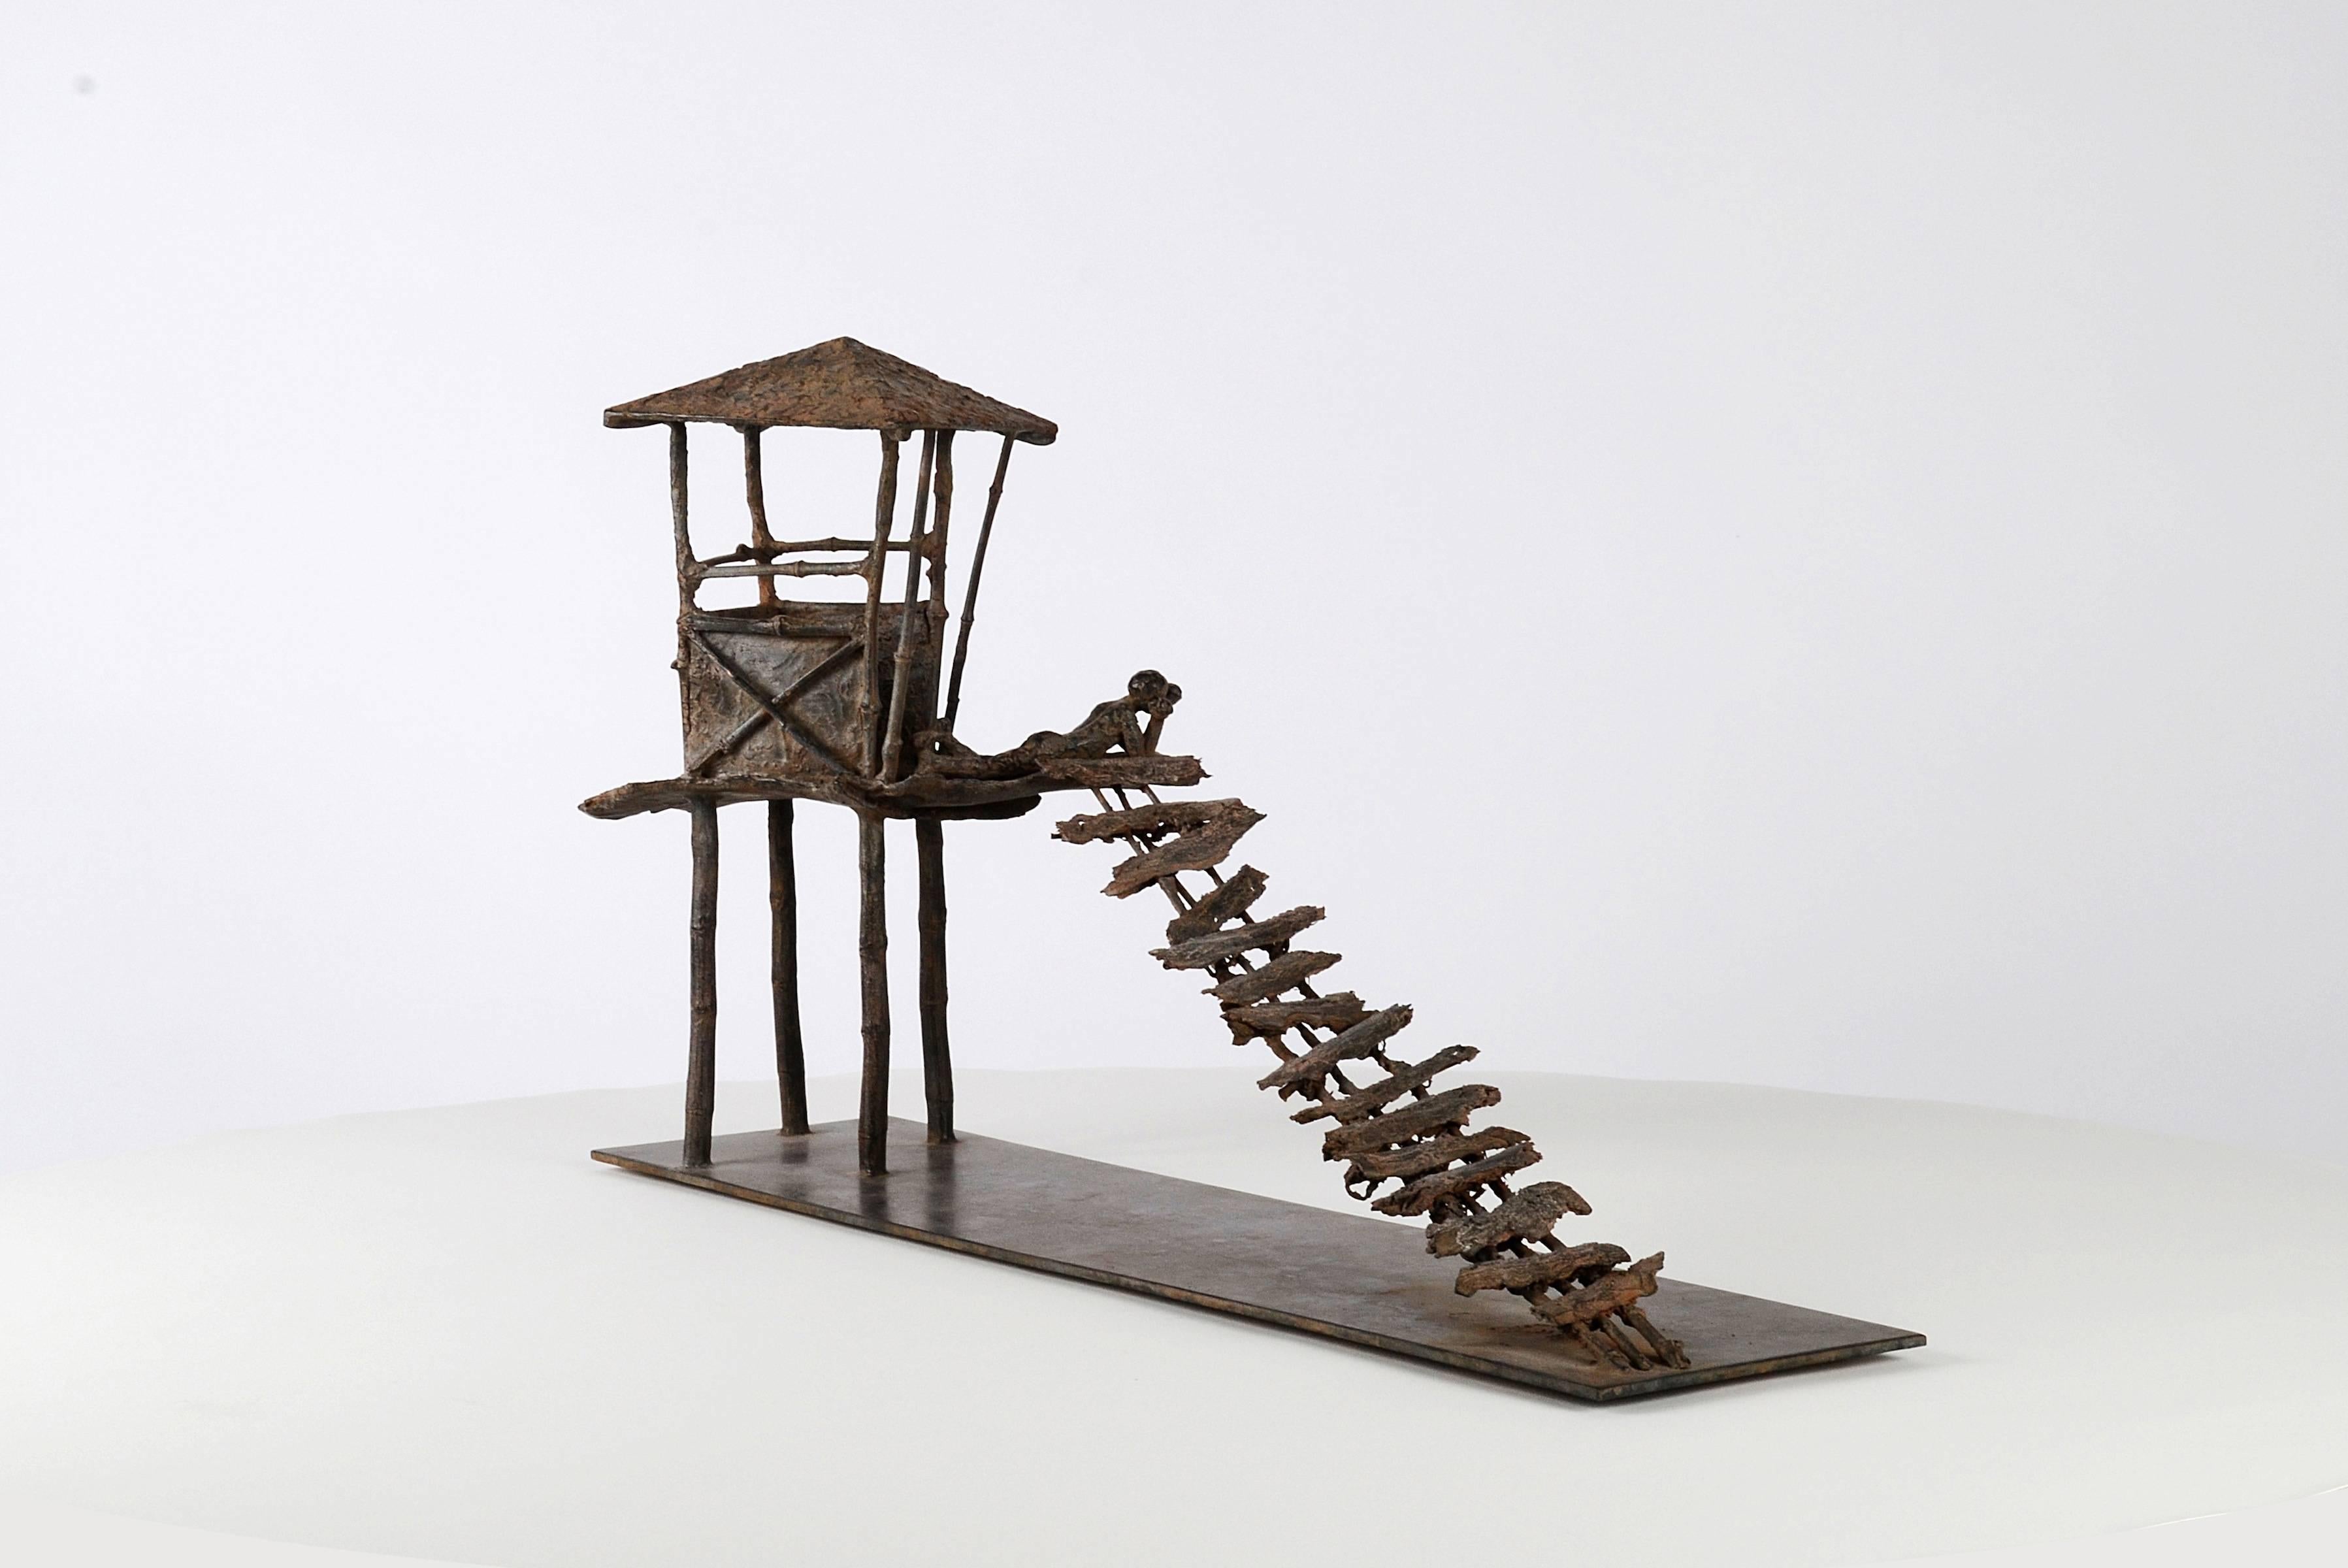 Die gebogenen Bretter (Les planches courbes) sind eine Bronzeskulptur der französischen zeitgenössischen Künstlerin Marine de Soos. Es stellt eine Hütte auf Stelzen dar, zu der eine prekäre Treppe führt. Ein junger Mann liegt auf der Plattform der